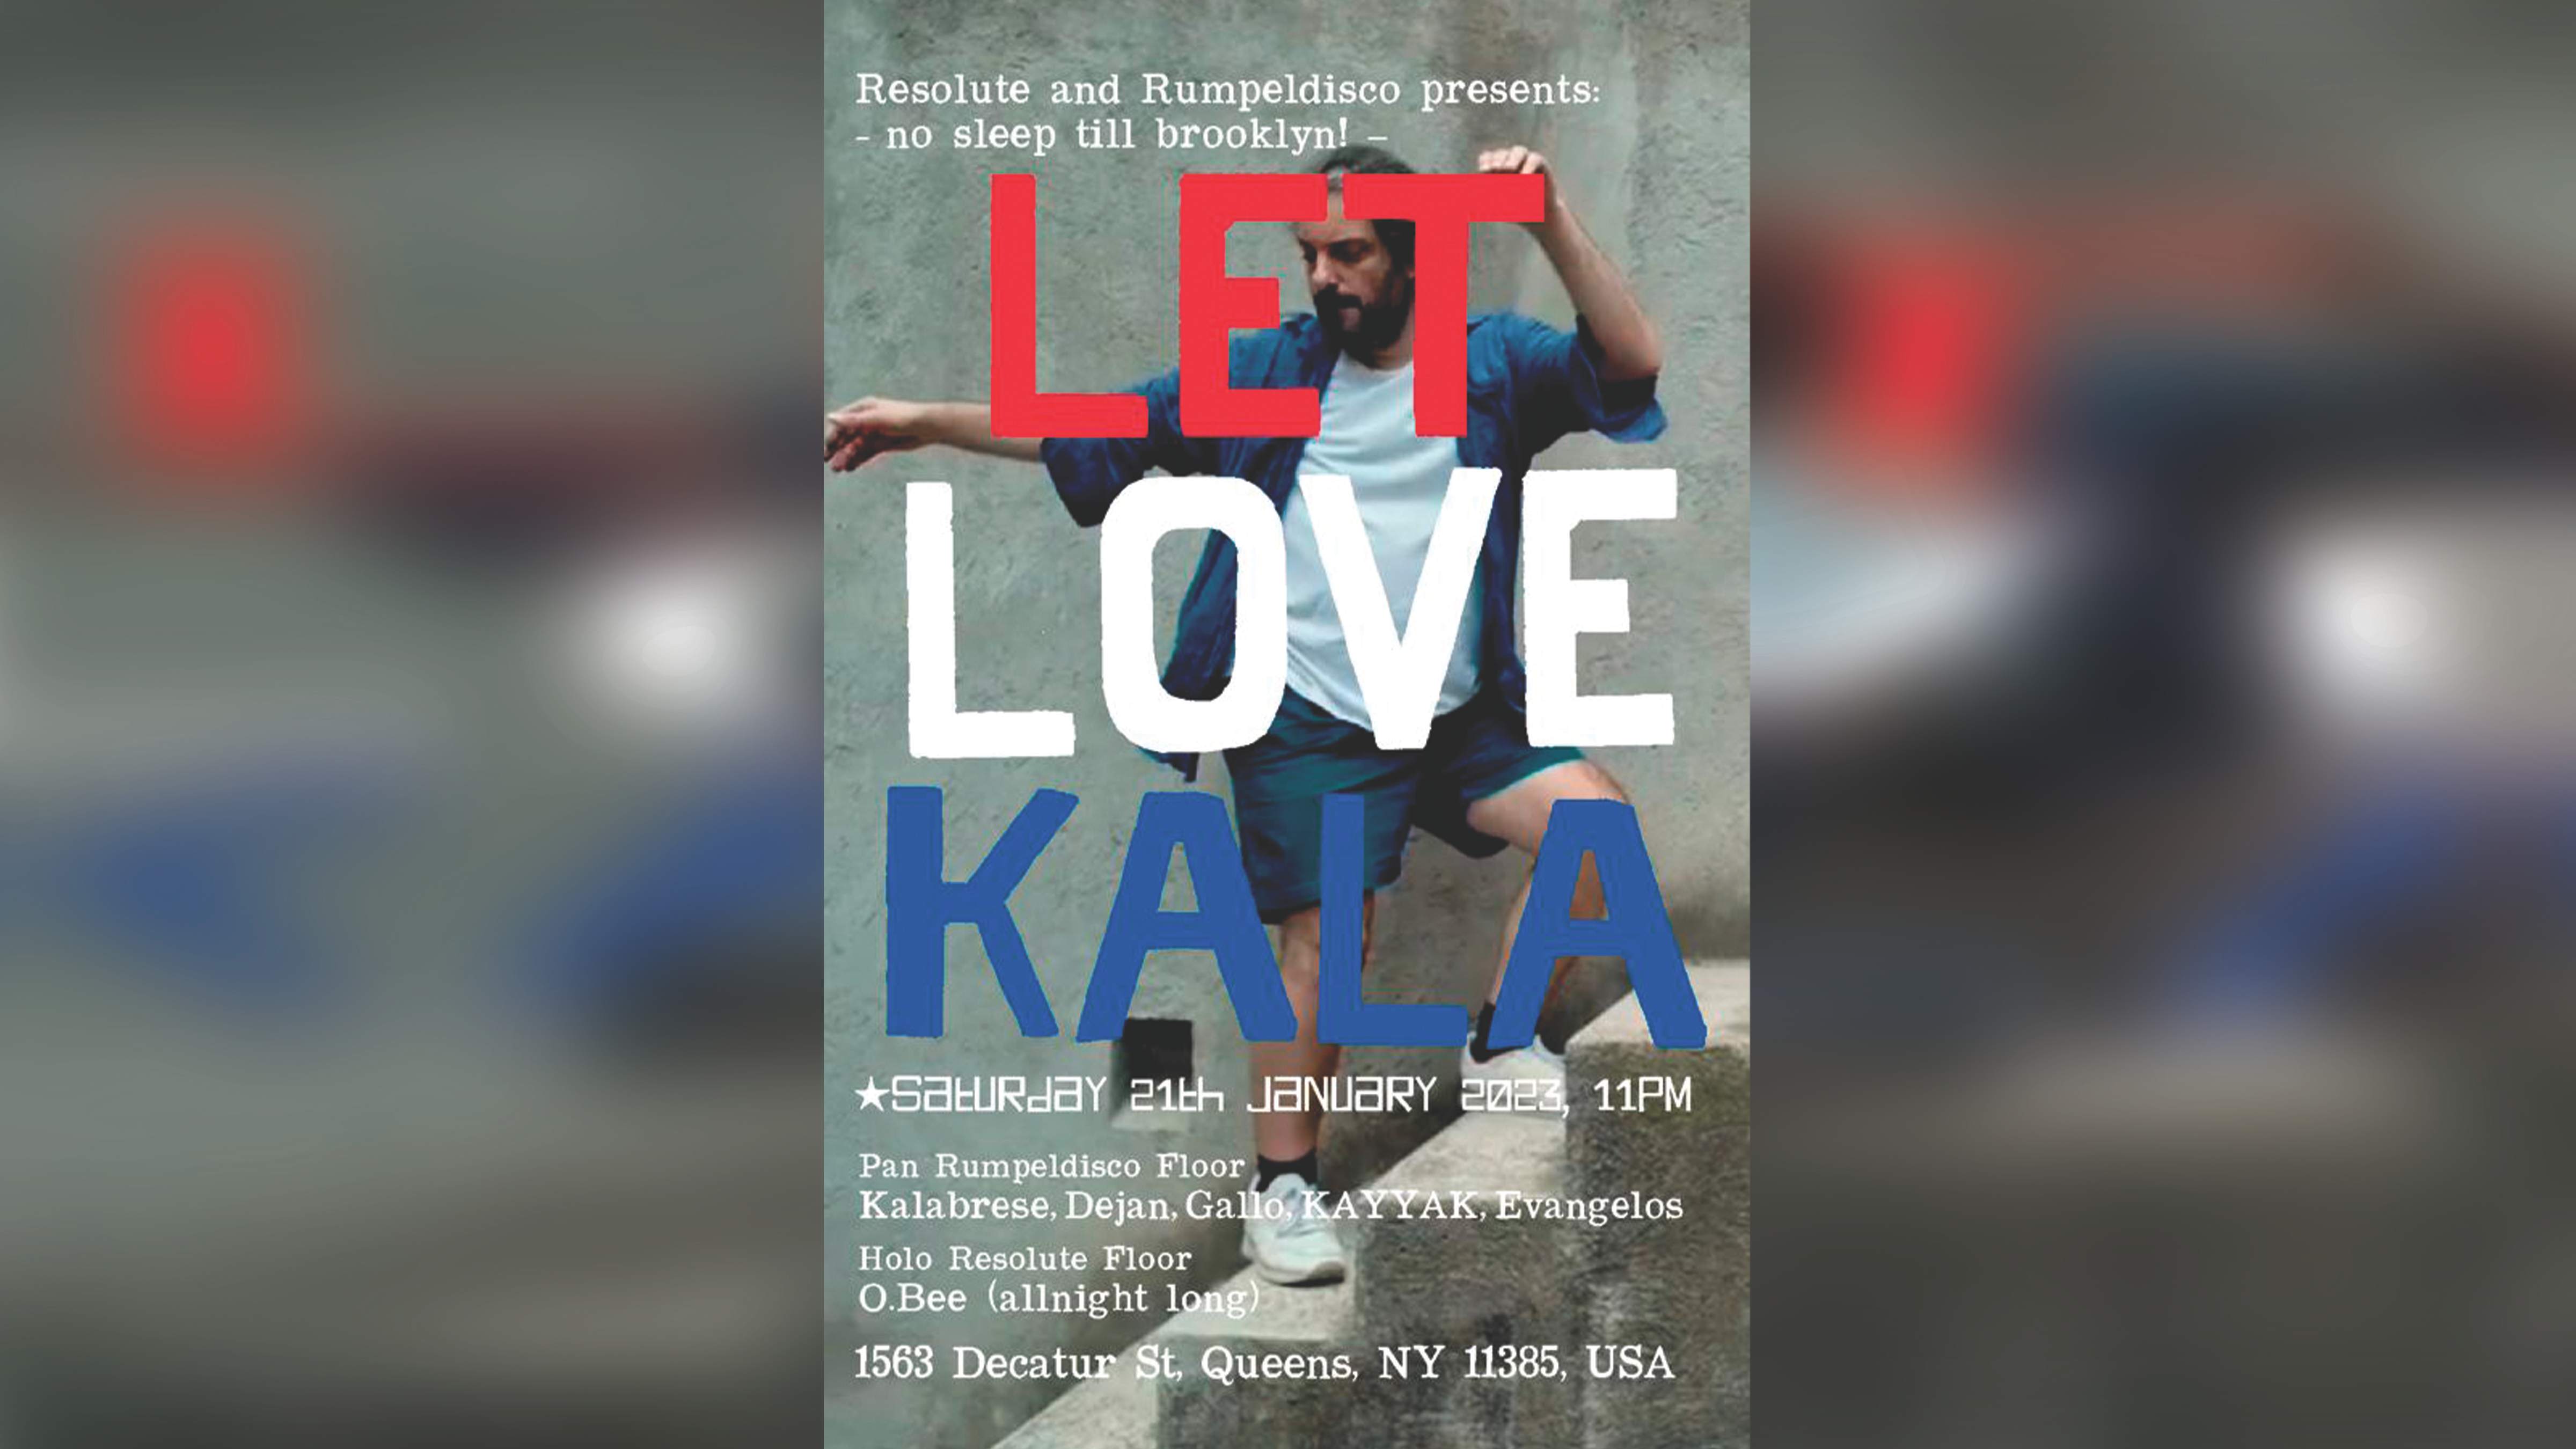 Let Love Kala presented by ReSolute & Rumpledisco - Página frontal